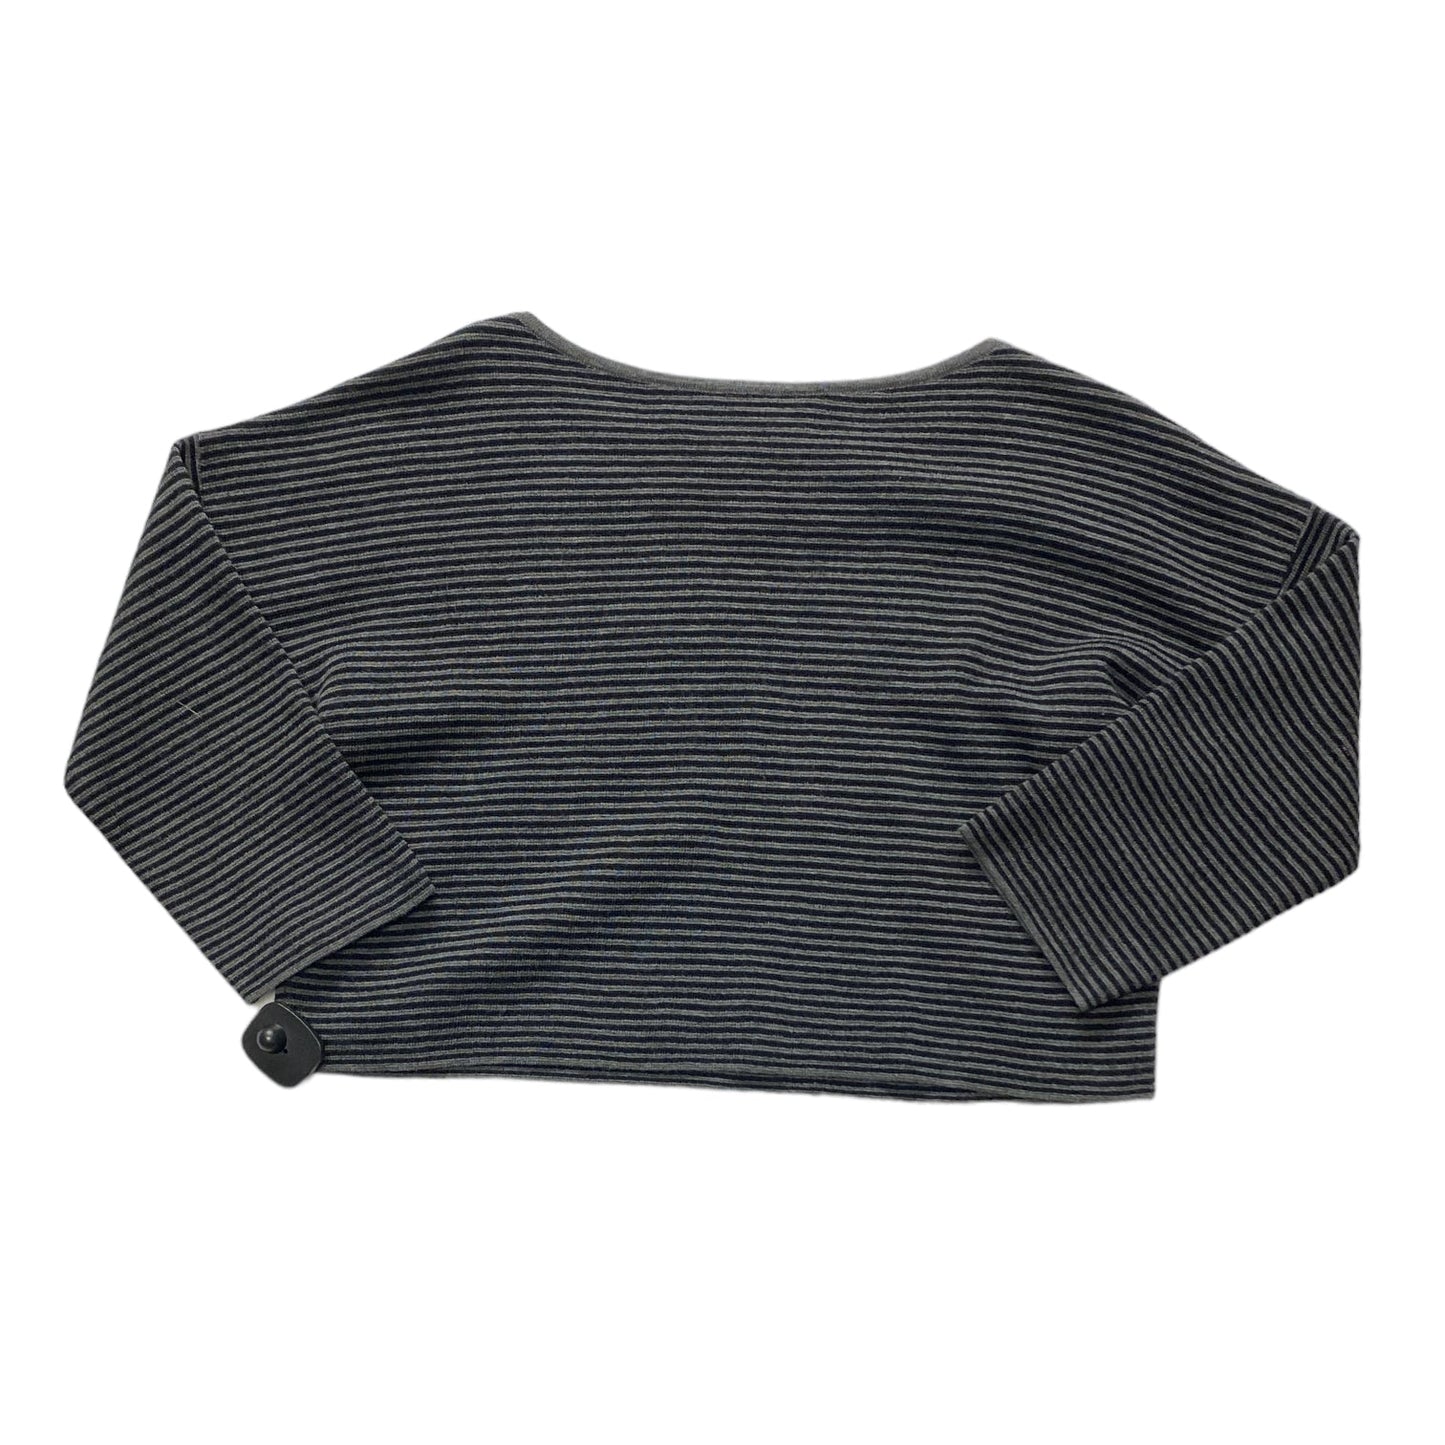 Black & Grey Sweater Designer Eileen Fisher, Size Xs